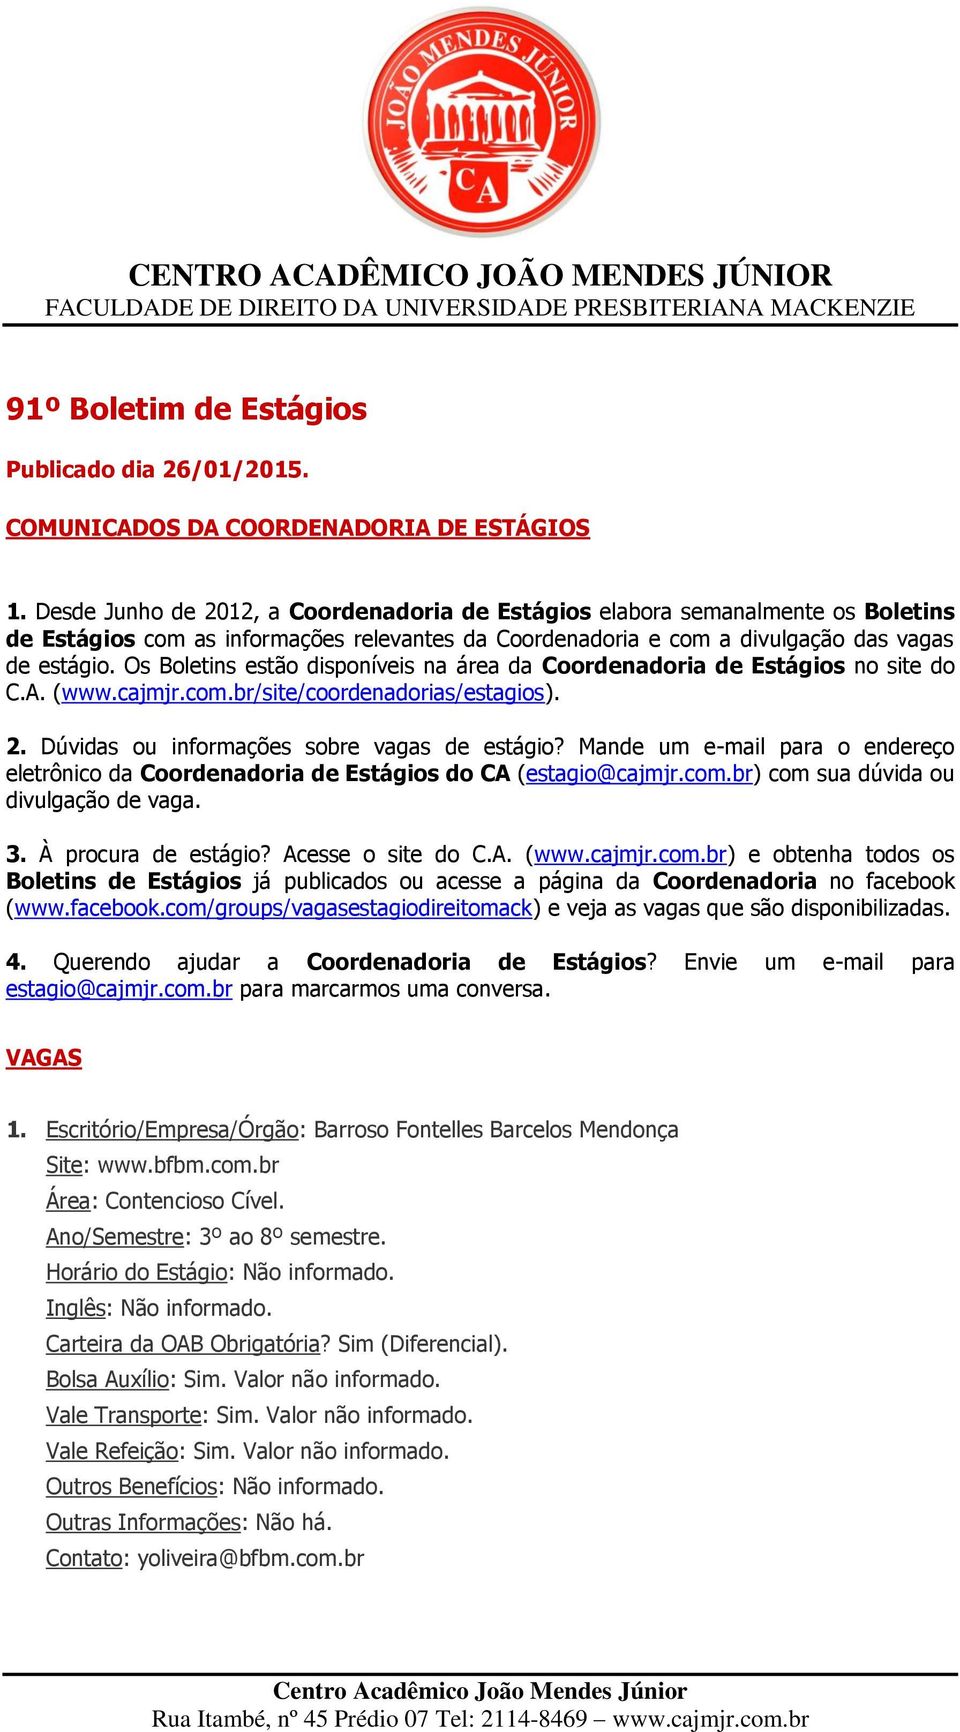 Os Boletins estão disponíveis na área da Coordenadoria de Estágios no site do C.A. (www.cajmjr.com.br/site/coordenadorias/estagios). 2. Dúvidas ou informações sobre vagas de estágio?